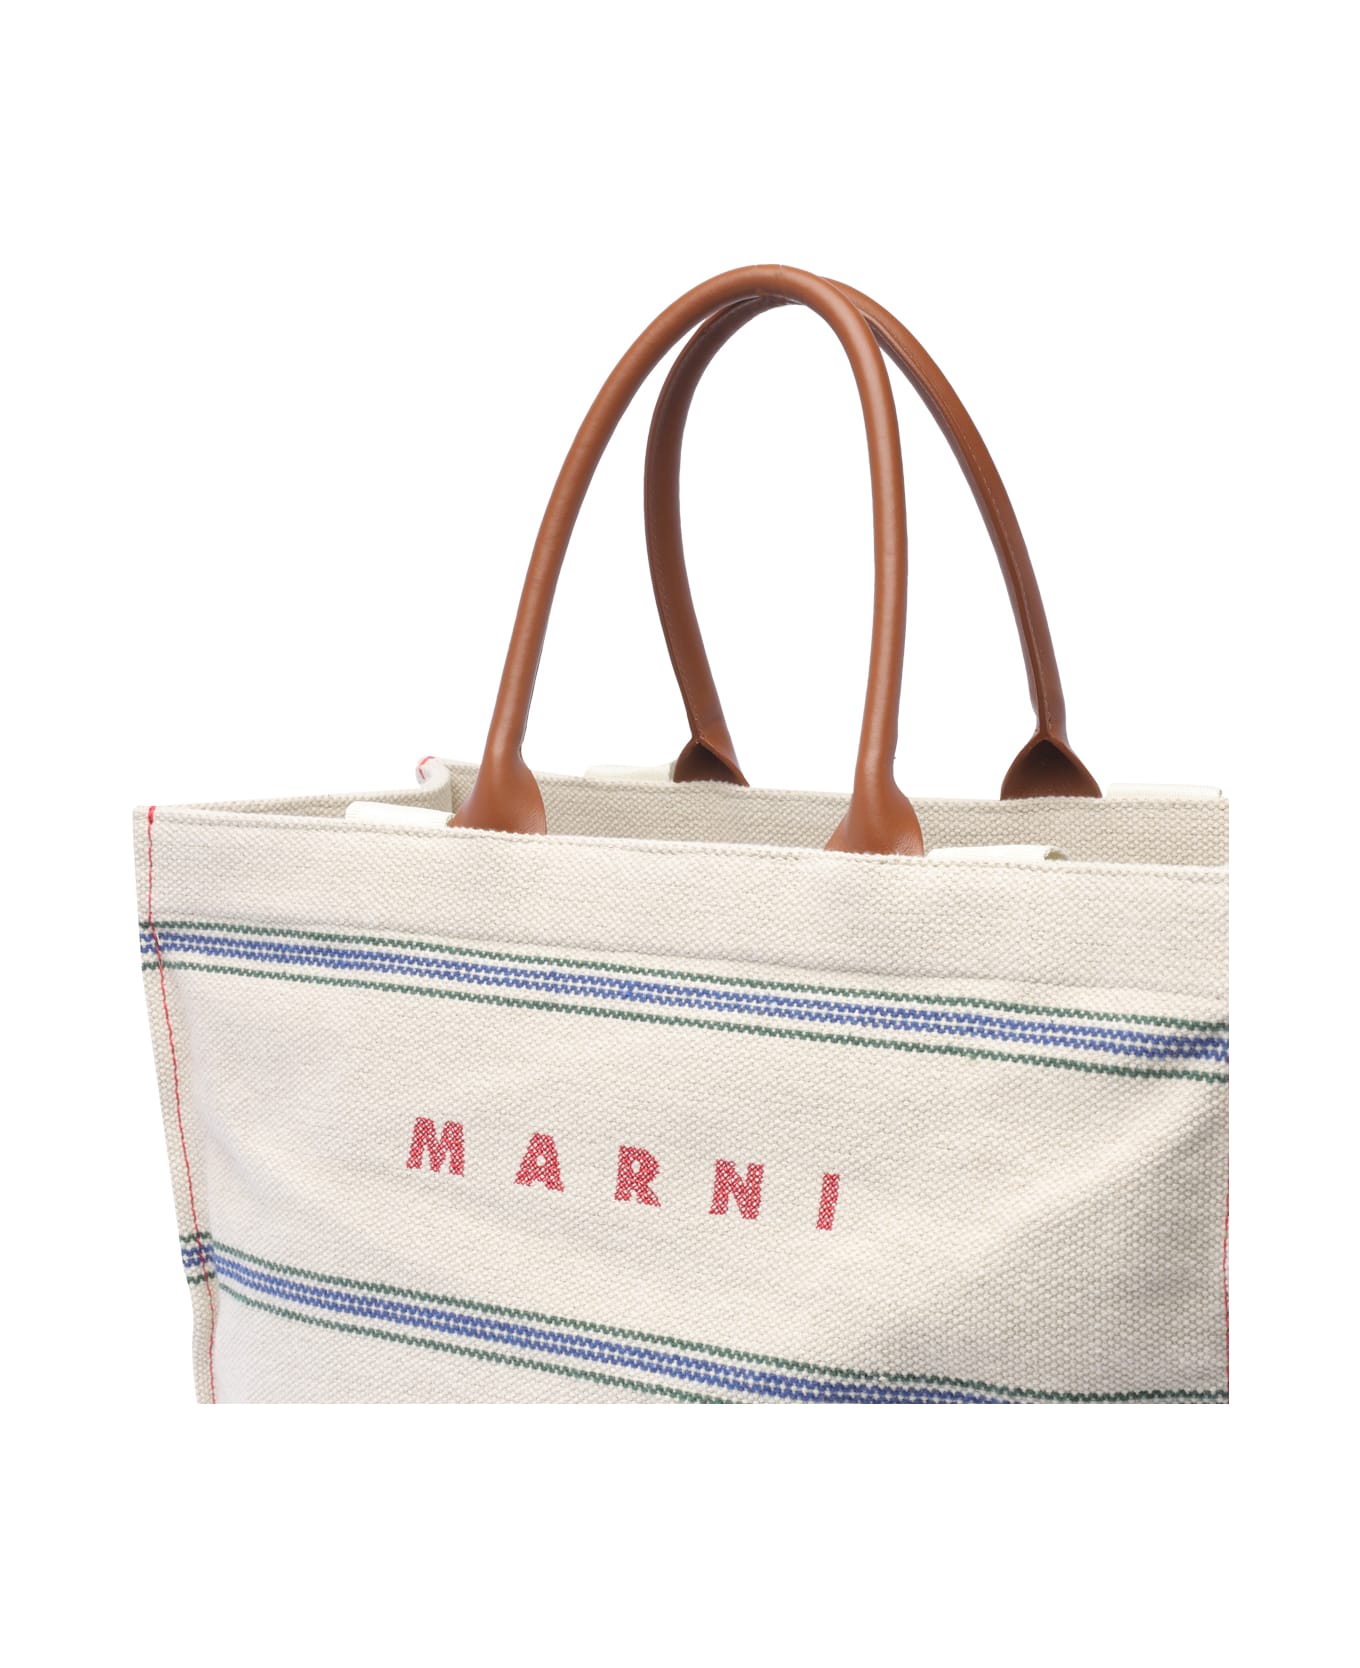 Marni Logo Tote Bag - Natural